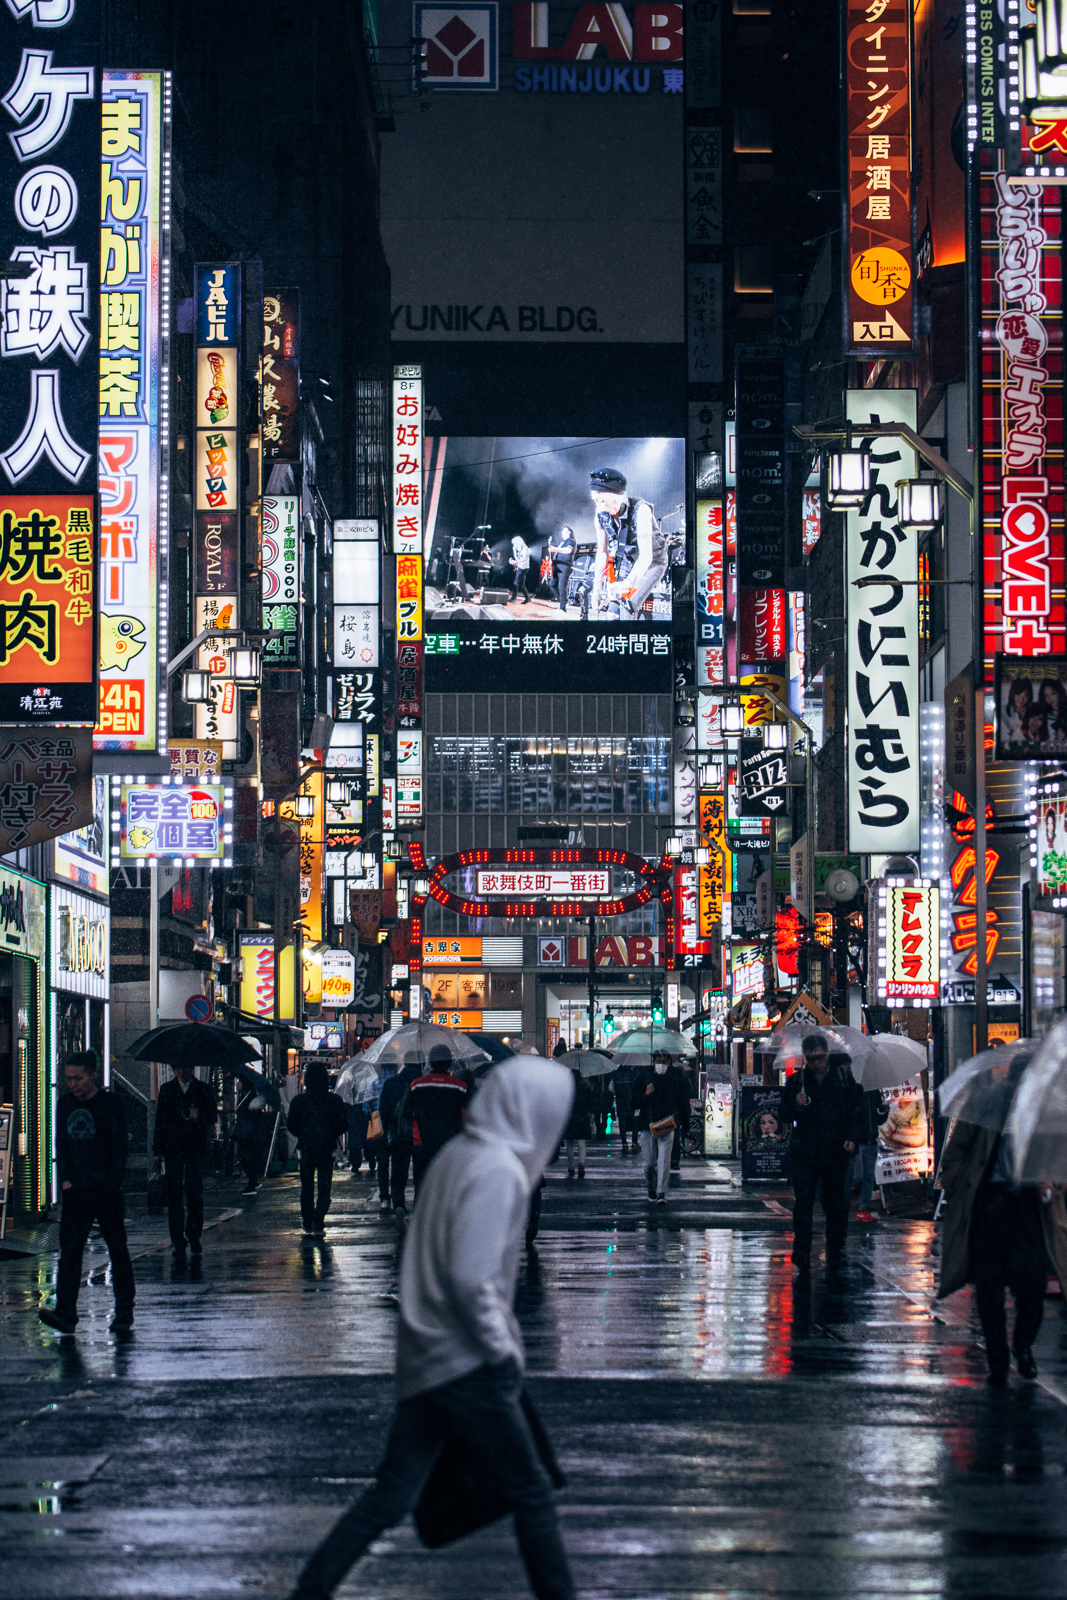 Thành thị Nhật Bản hiện đại là điểm đến lý tưởng cho những ai yêu thích công nghệ và văn hoá. Điều gì làm nên sự độc đáo và thu hút của thành phố đông đúc này? Hãy khám phá bức ảnh đầy cảm hứng này và bạn sẽ tìm thấy câu trả lời!